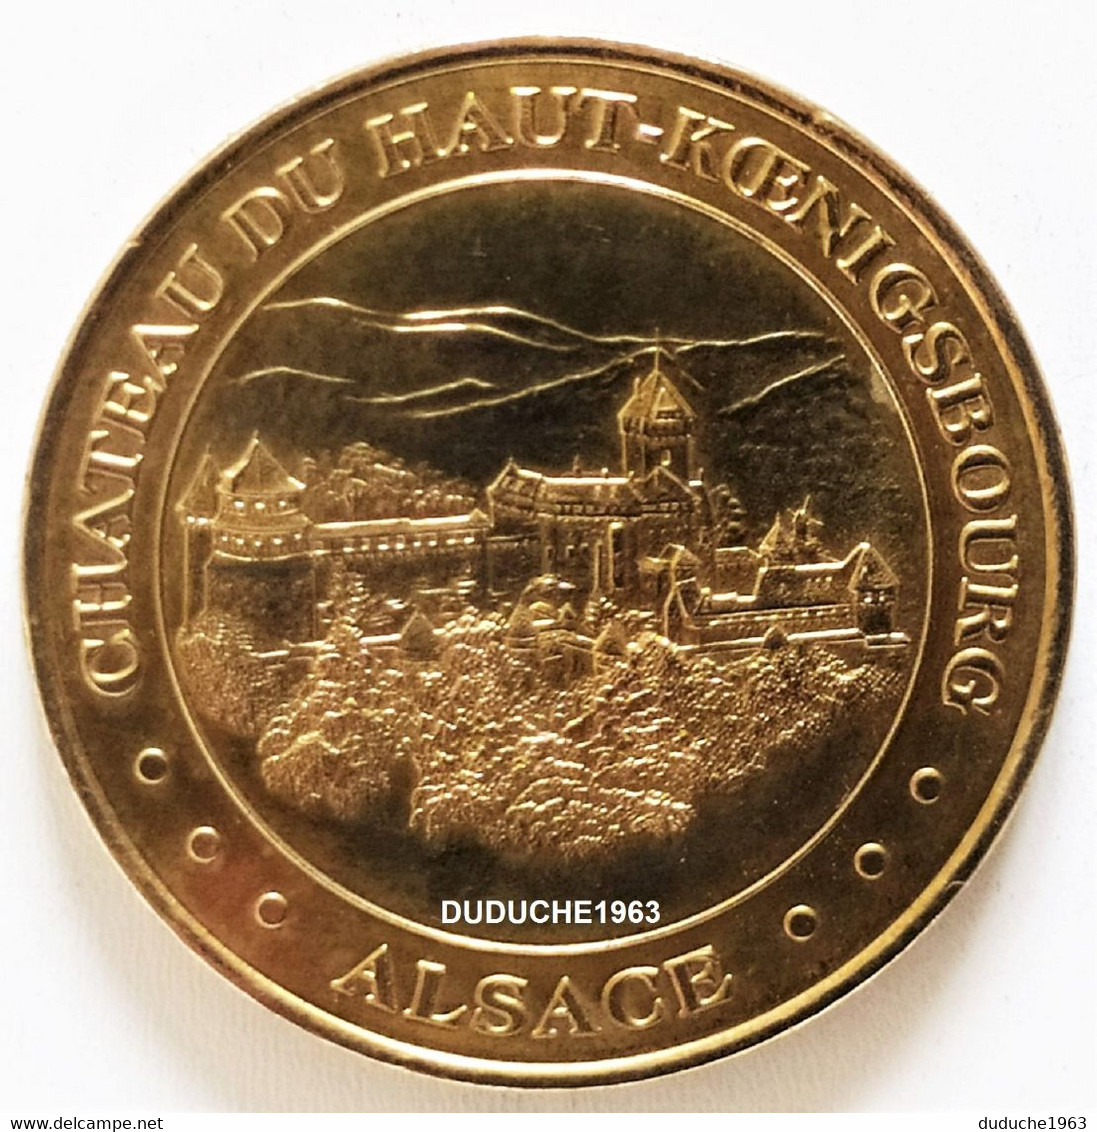 Monnaie De Paris 67.Orschwiller - Chateau Haut Koenigsbourg 2001 - 2001